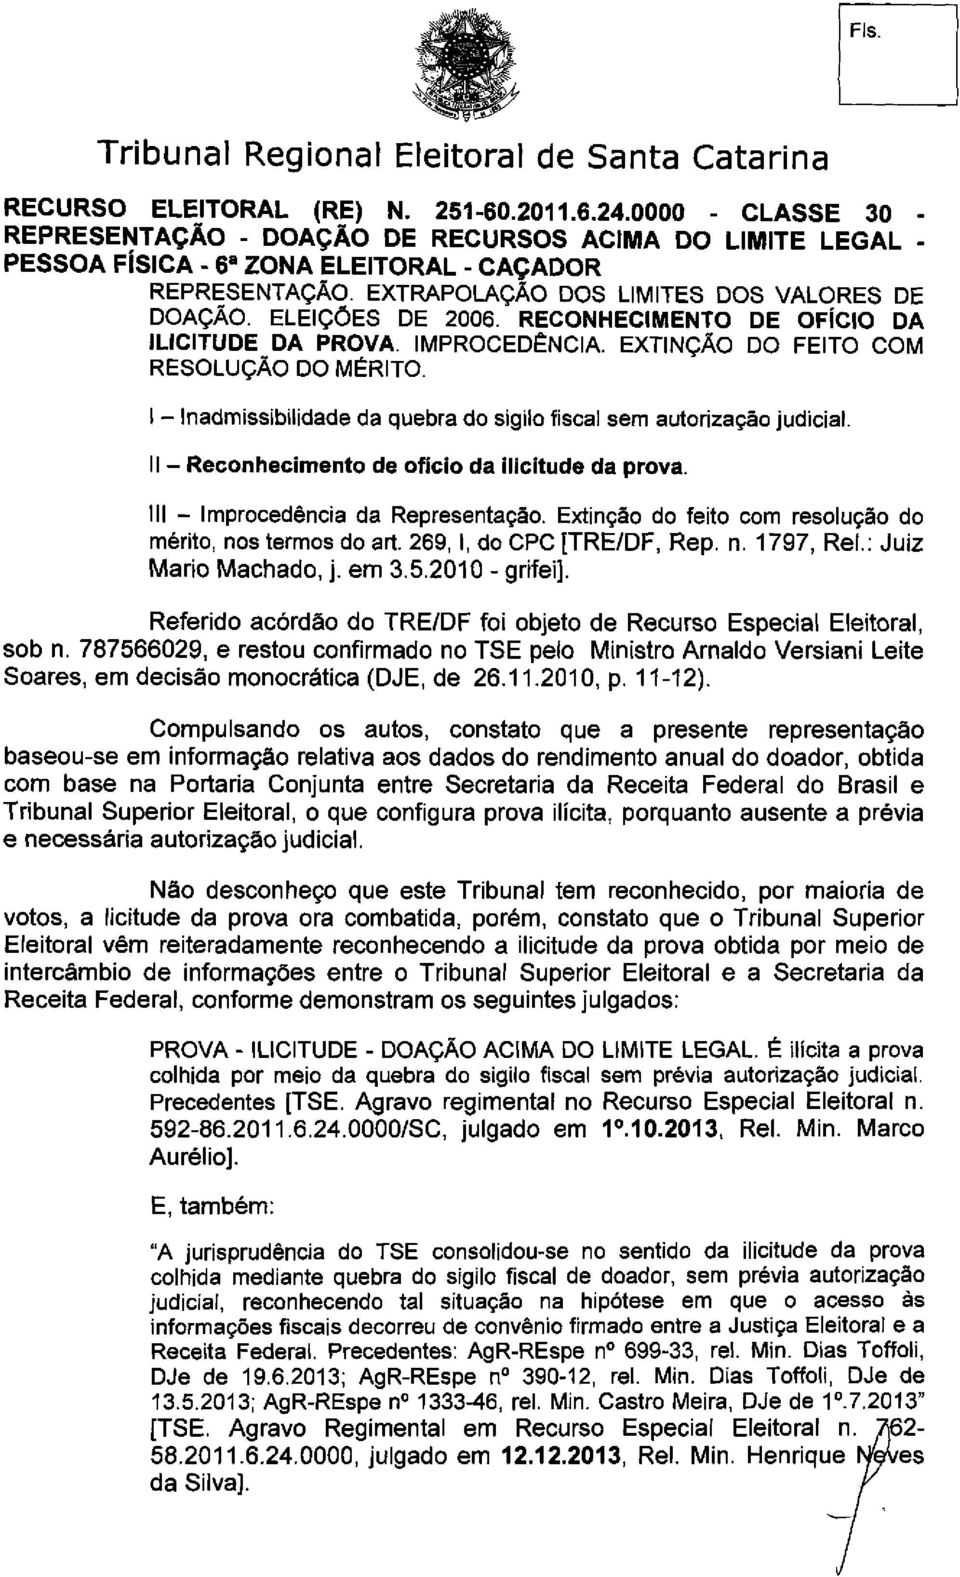 Extinção do feito com resolução do mérito, nos termos do art. 269,1, do CPC [TRE/DF, Rep. n. 1797, Rei.: Juiz Mario Machado, j. em 3.5.2010 - grifei].